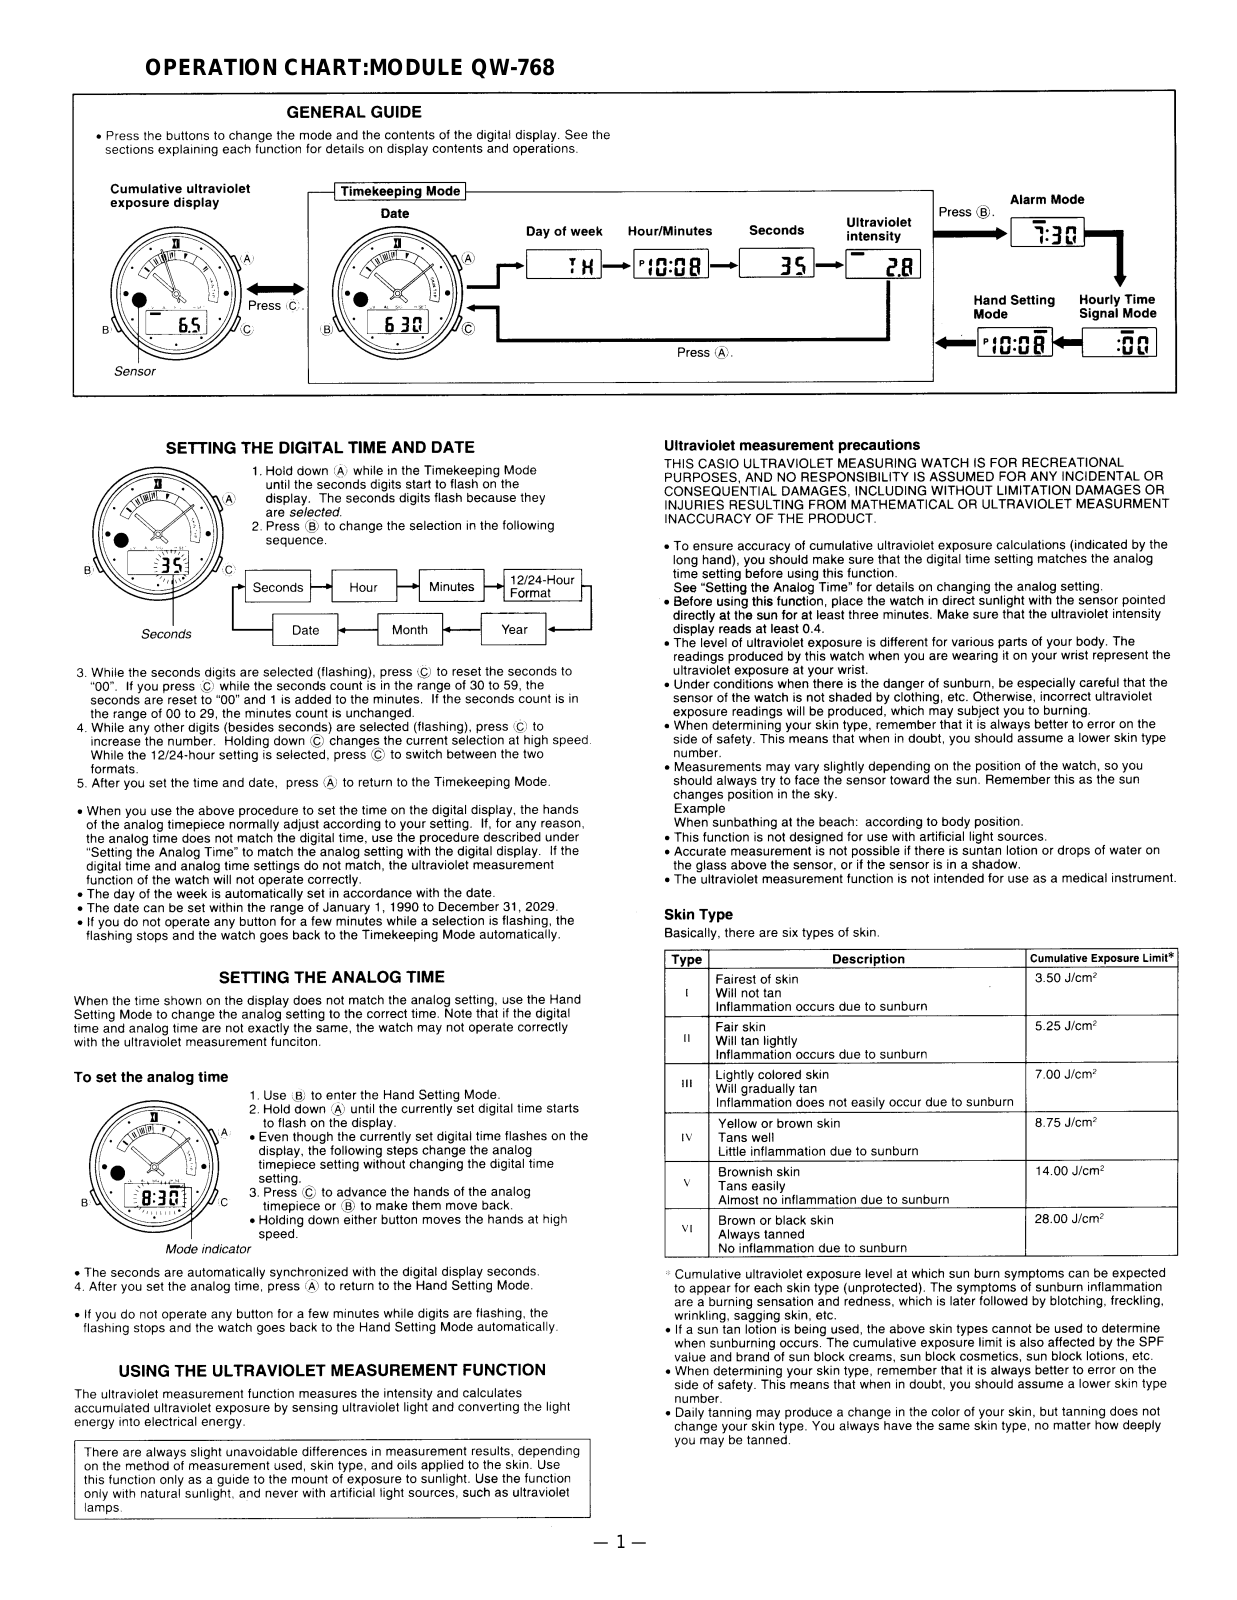 Casio 768 Owner's Manual